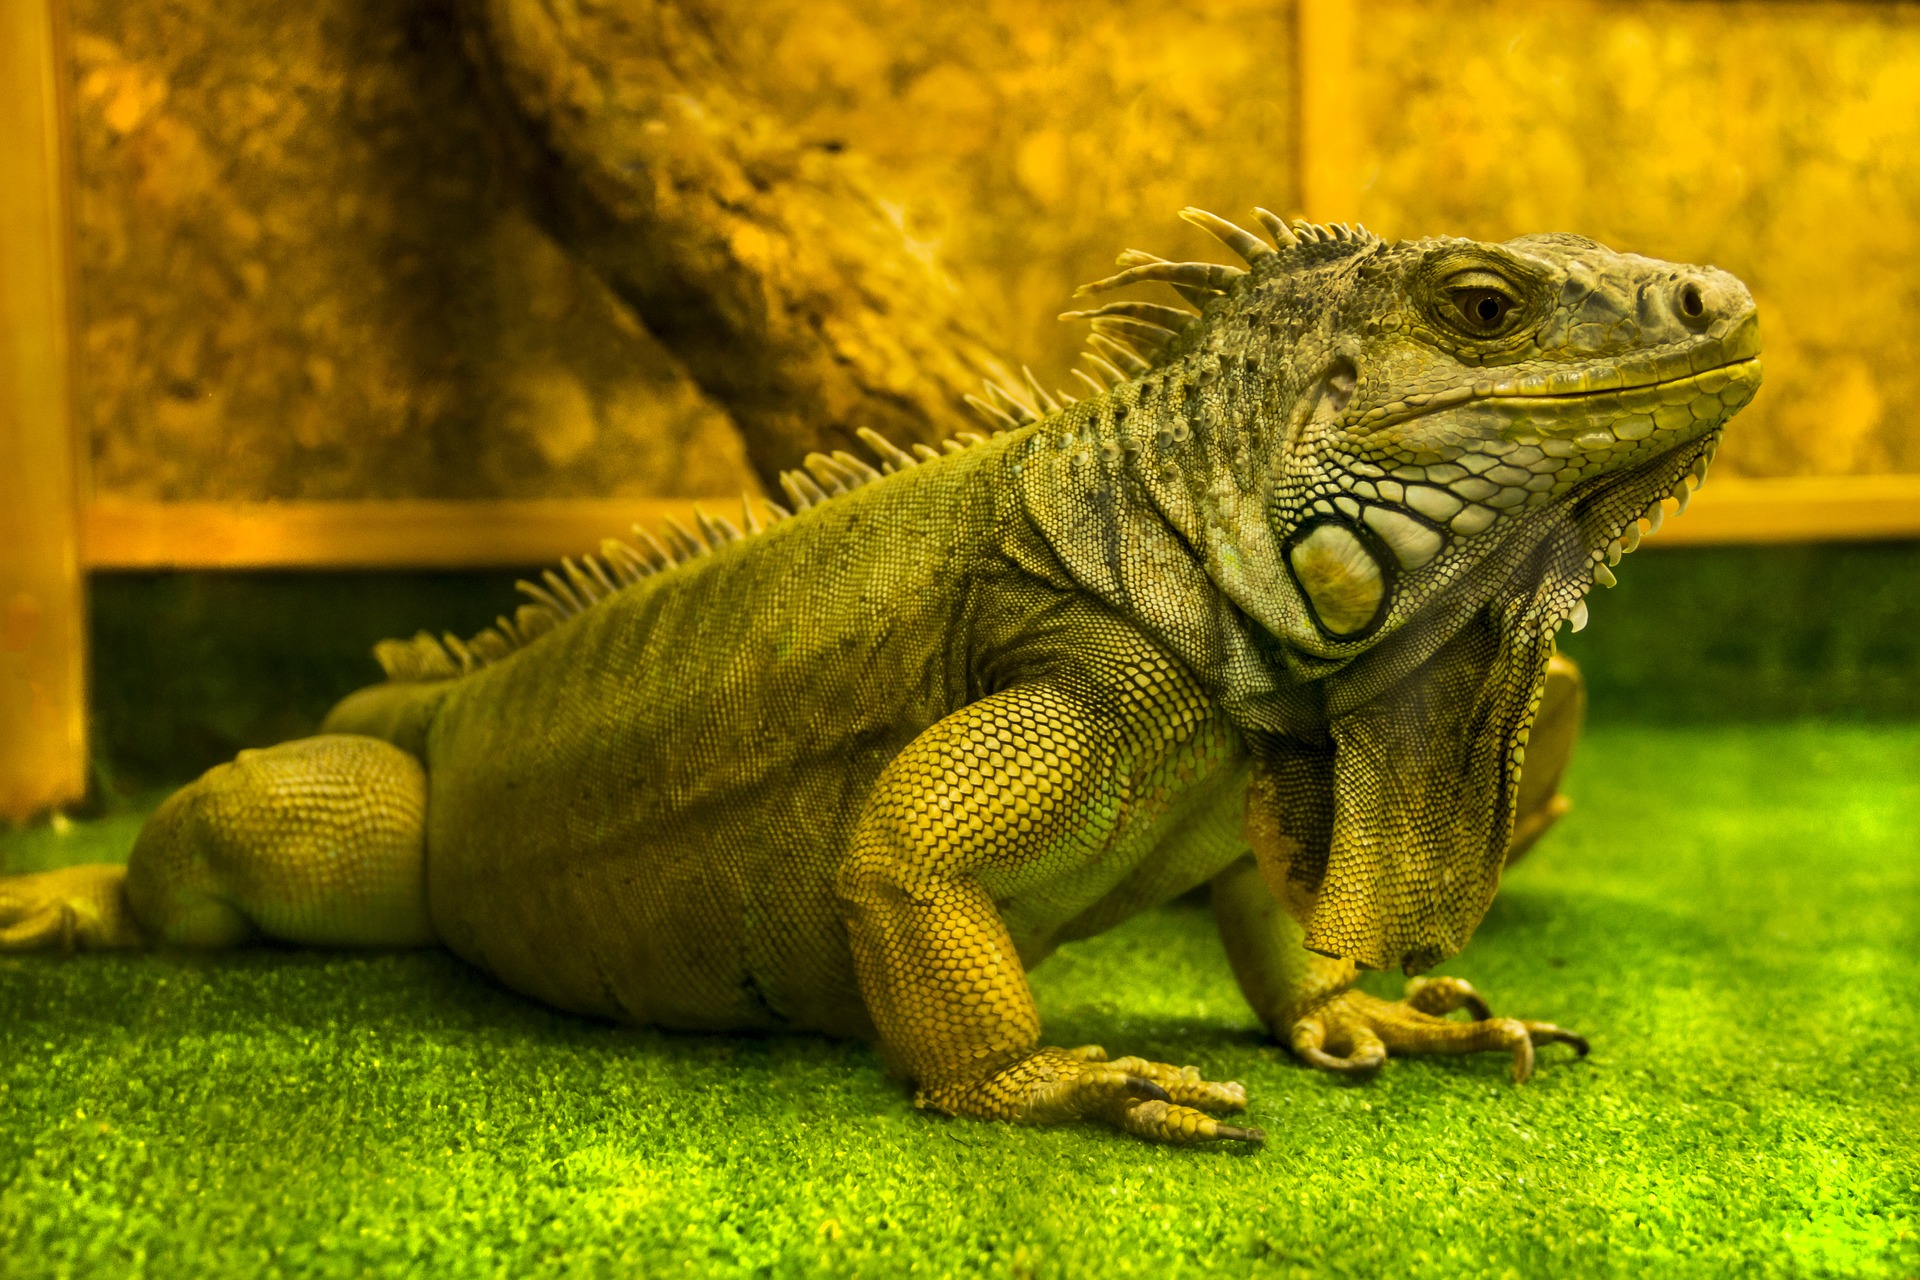 Iguana on terrarium liner